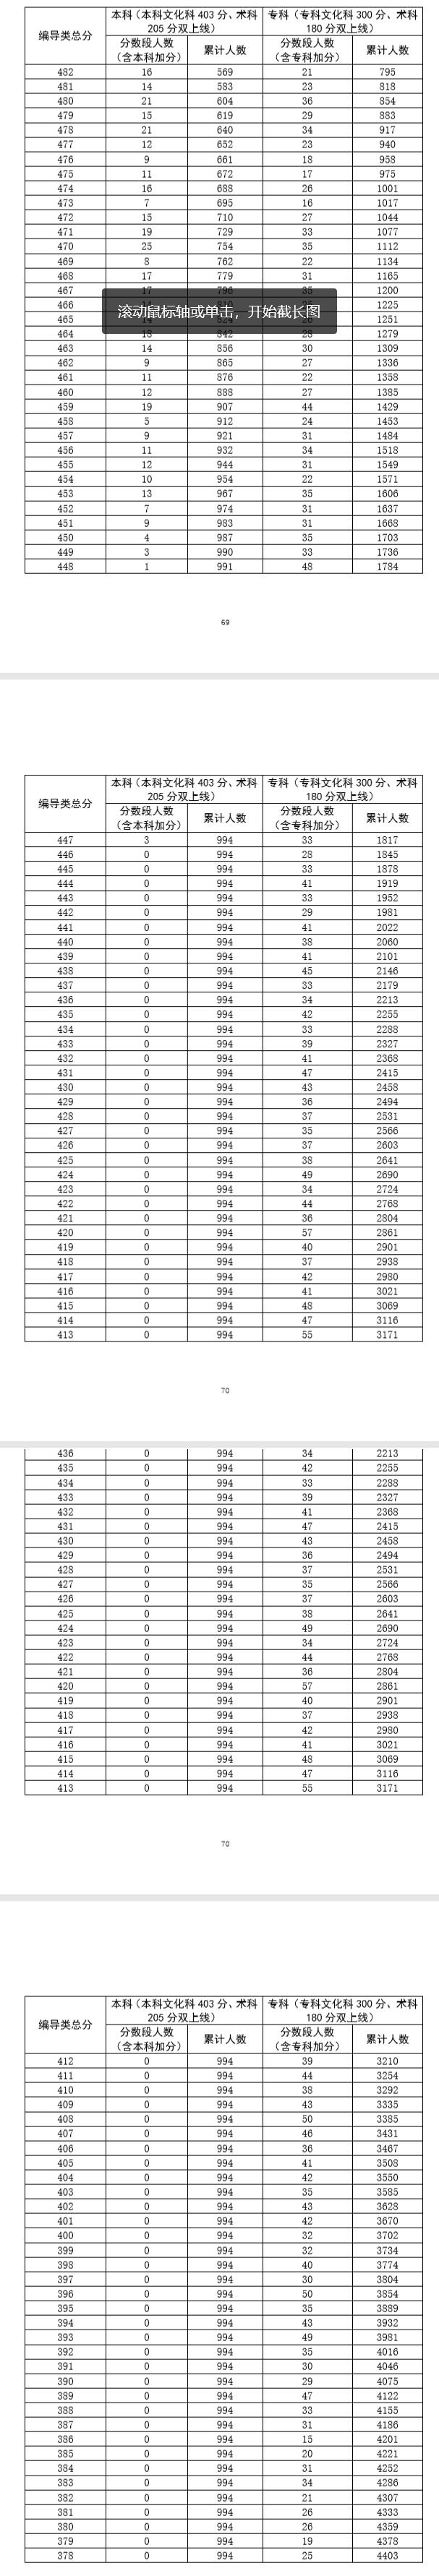 广东省2020年普通高考广播电视编导类总分分段统计表2